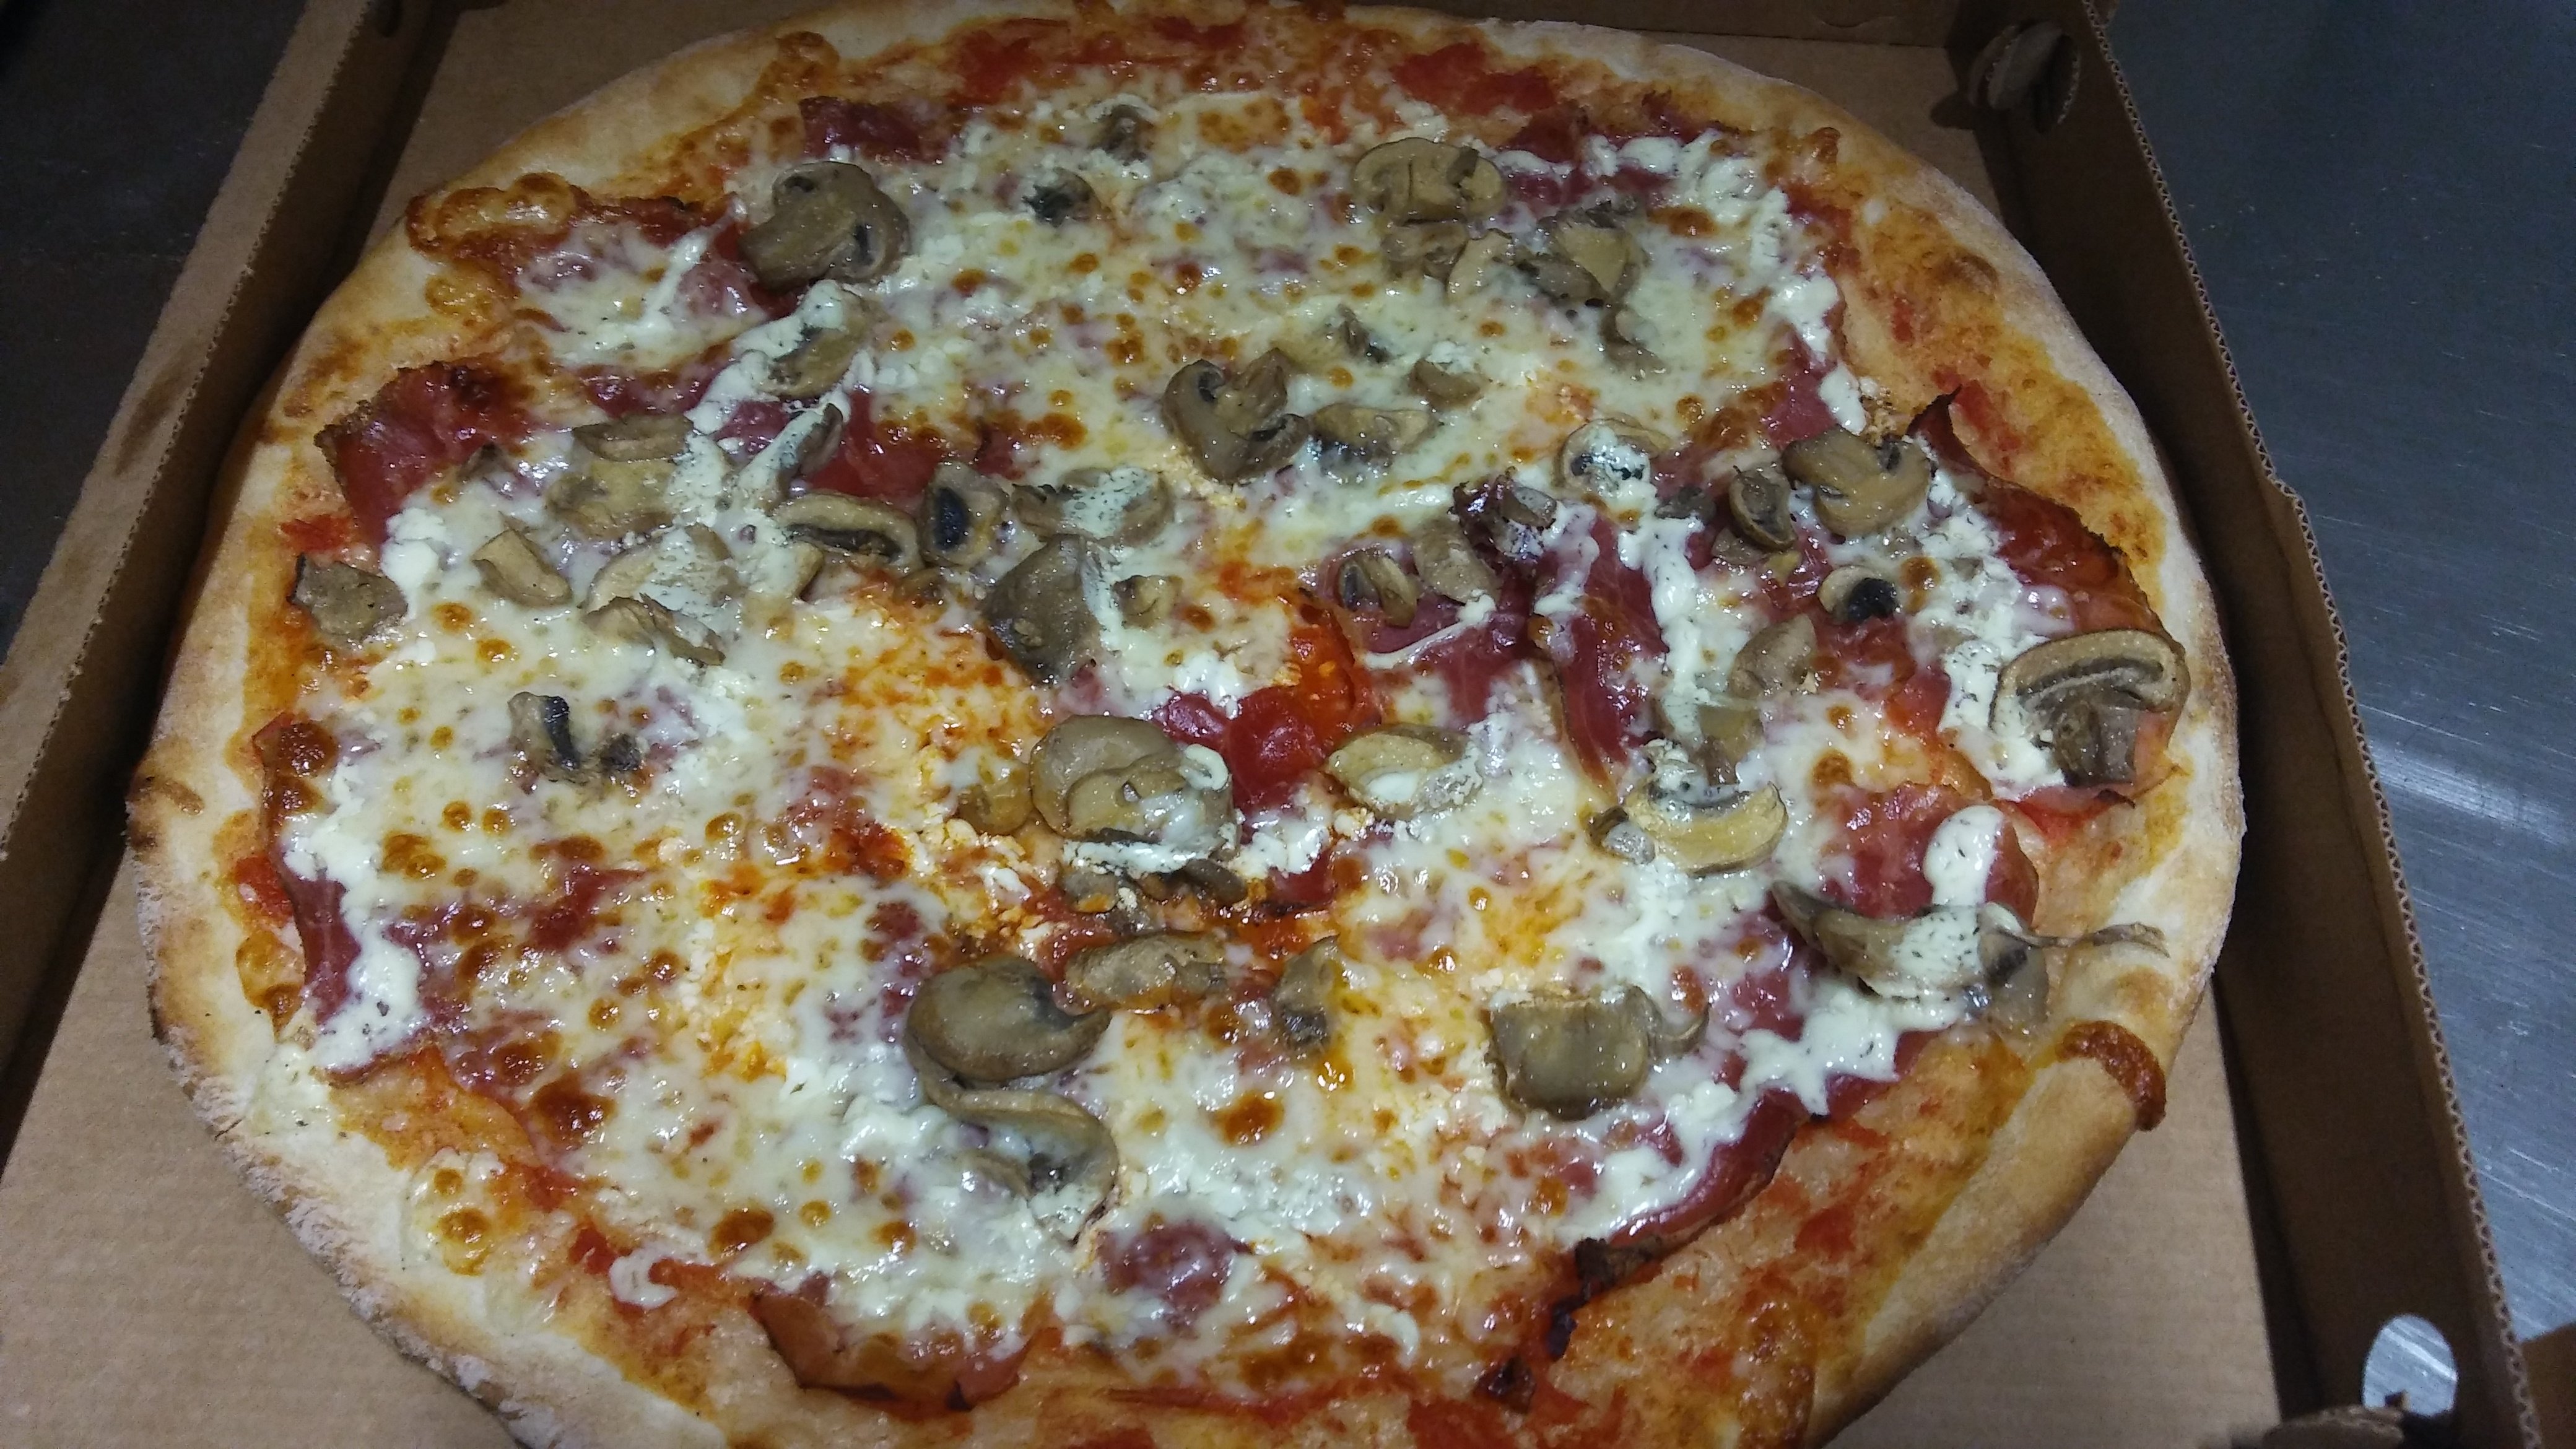 Pizza Asporto Giove, Piombino Dese